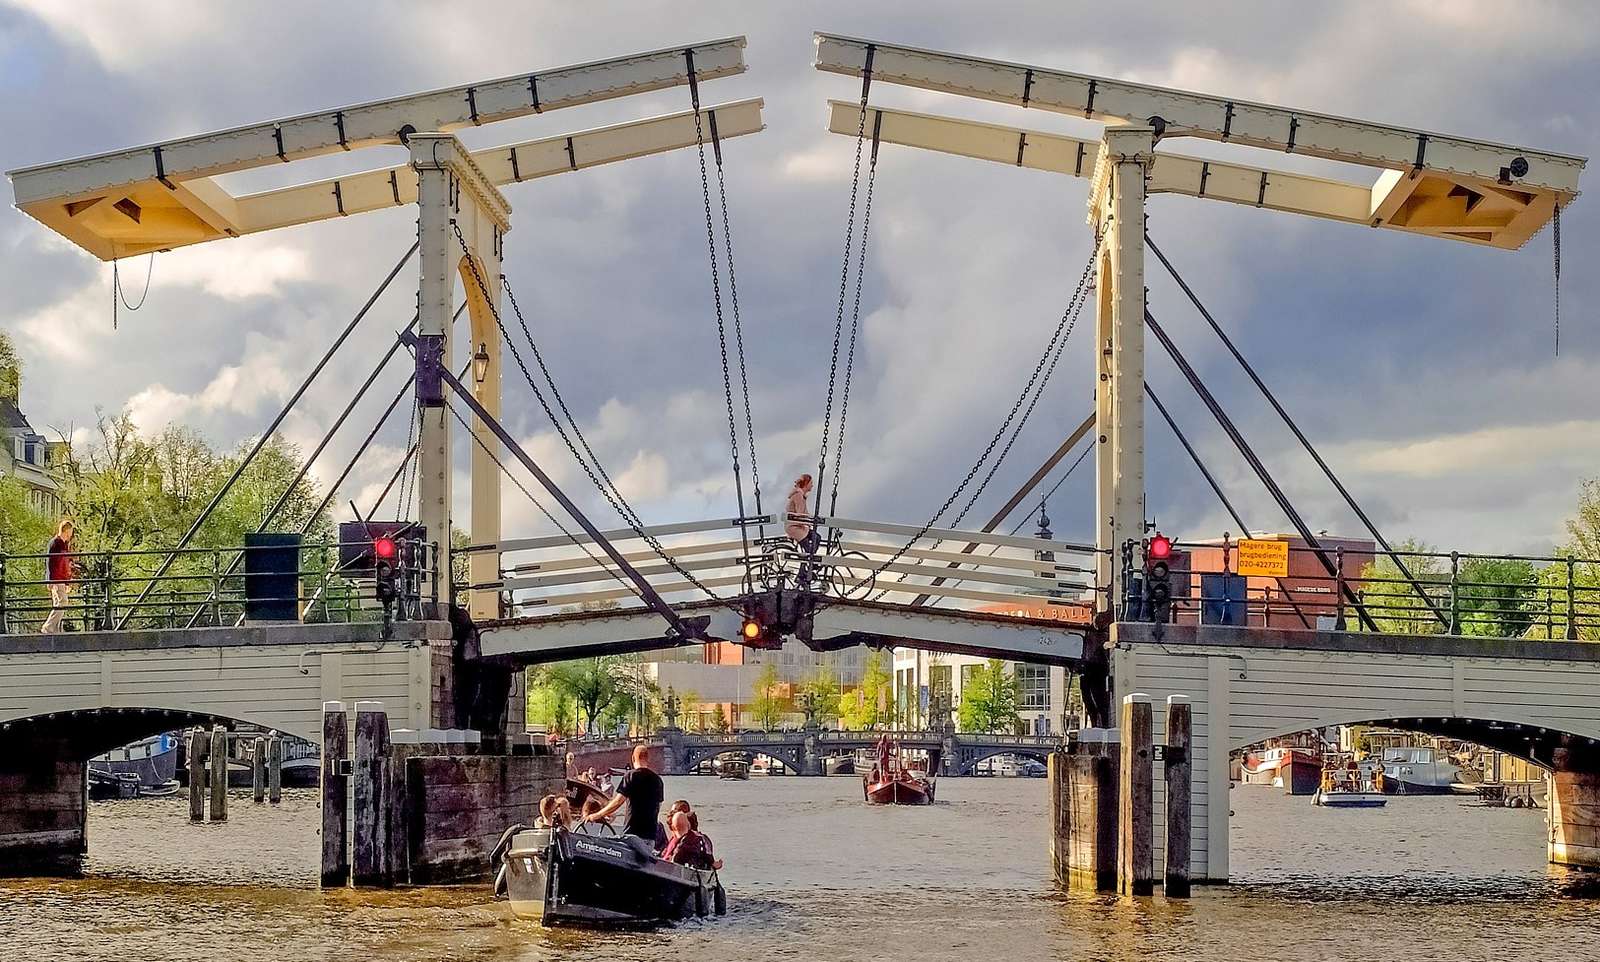 Magere Brug (Skinny Bridge) em Amsterdã puzzle online